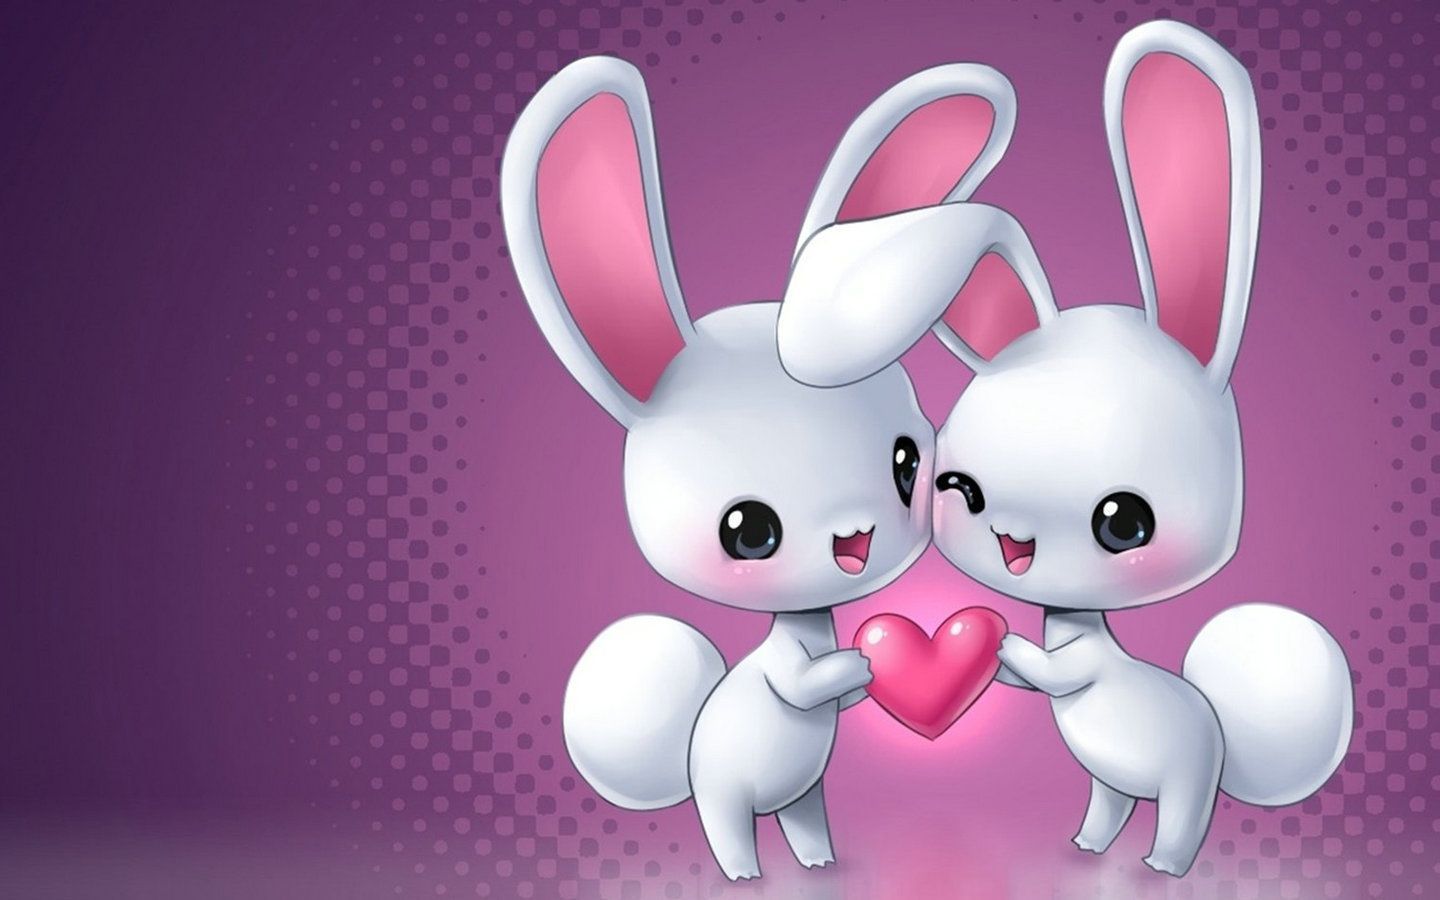 زیباترین عکس خرگوش های عاشق برای پروفایل هنری و کارتونی